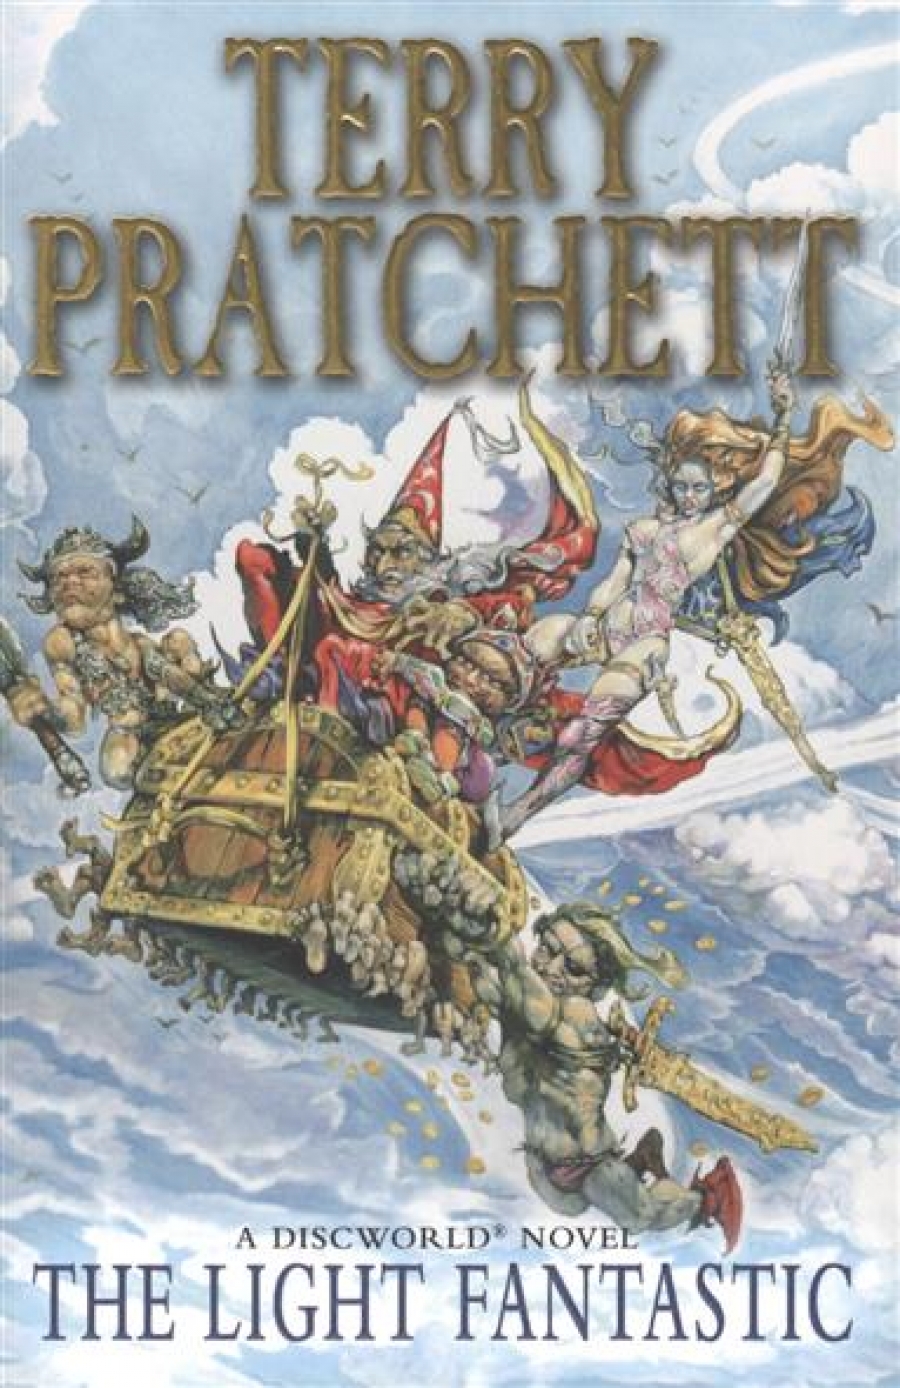 Pratchett T. The Light Fantastic 